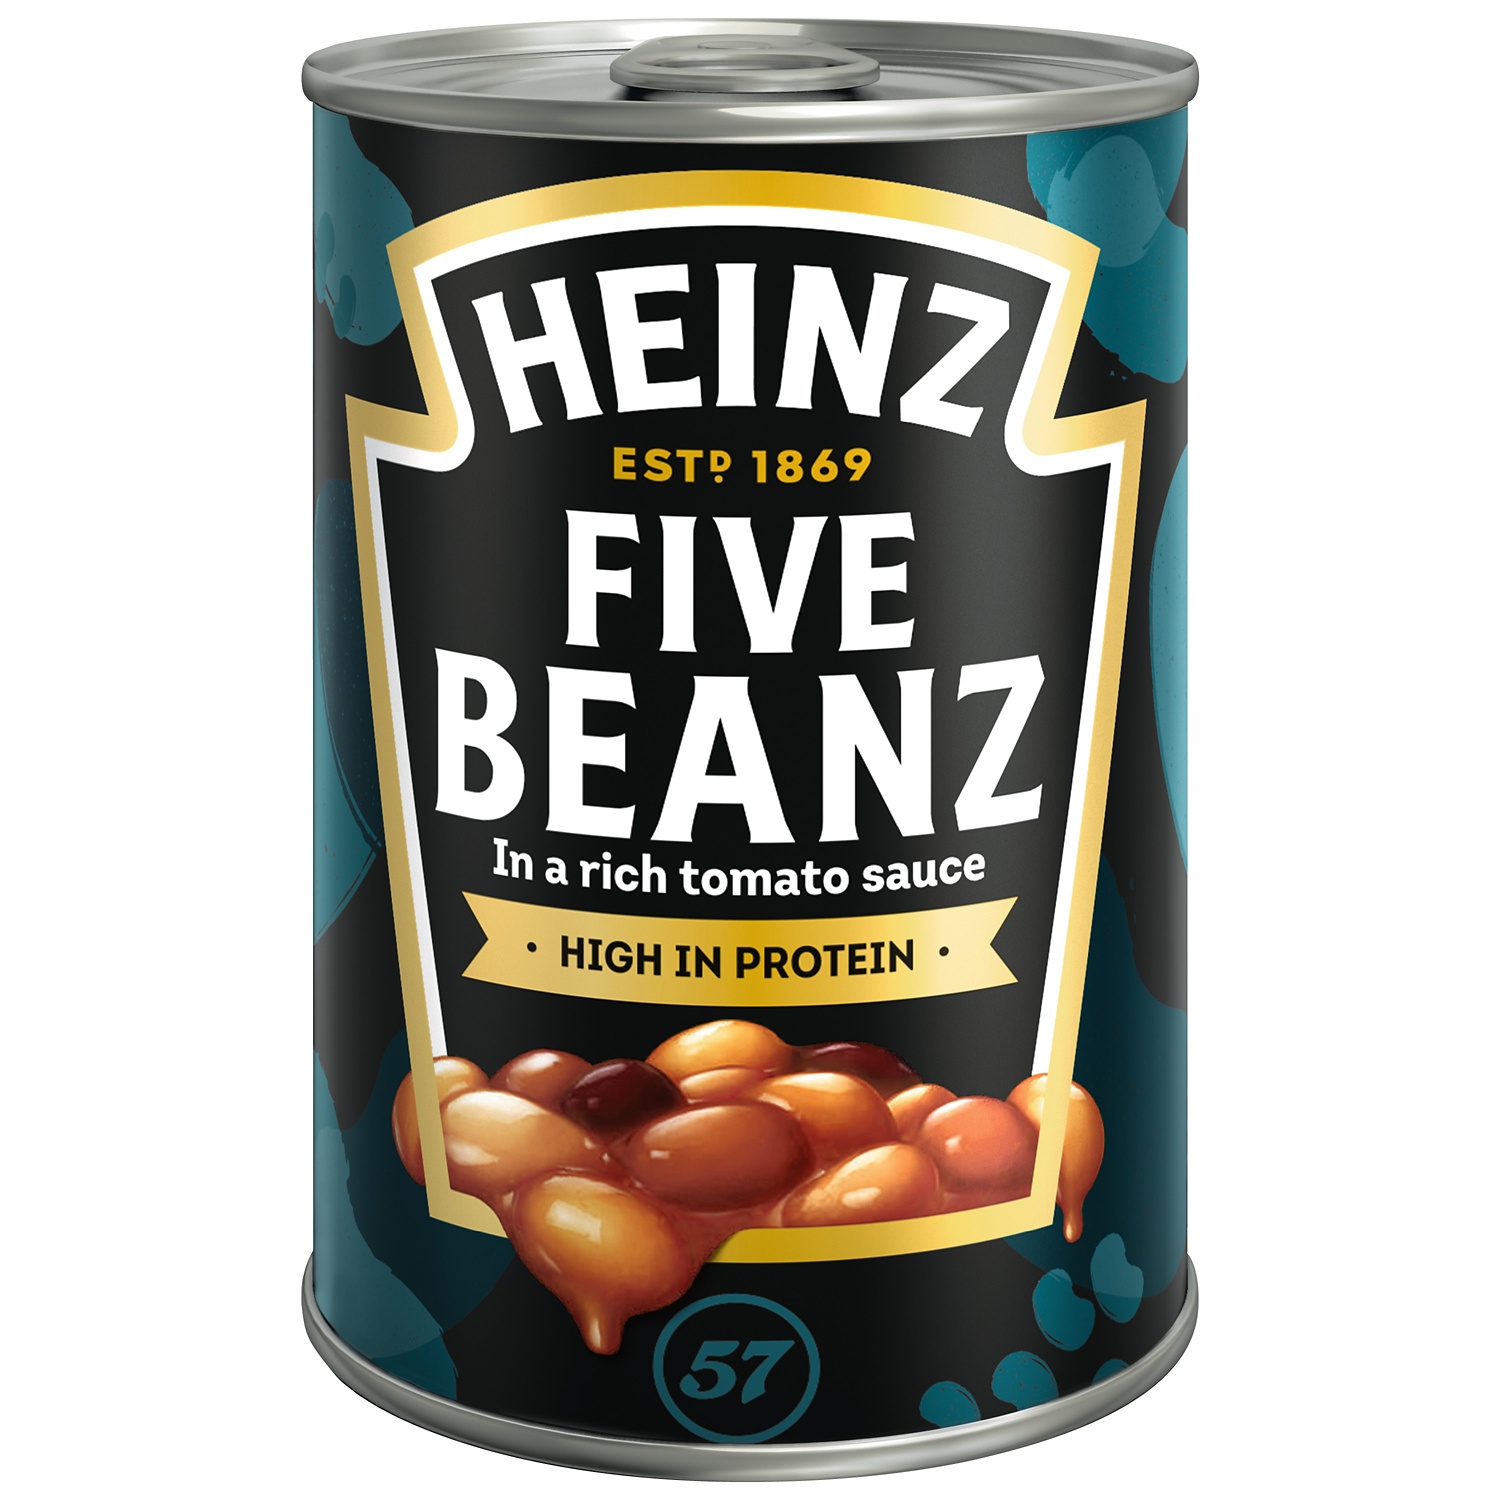 HEINZ Beanz, Five Beanz